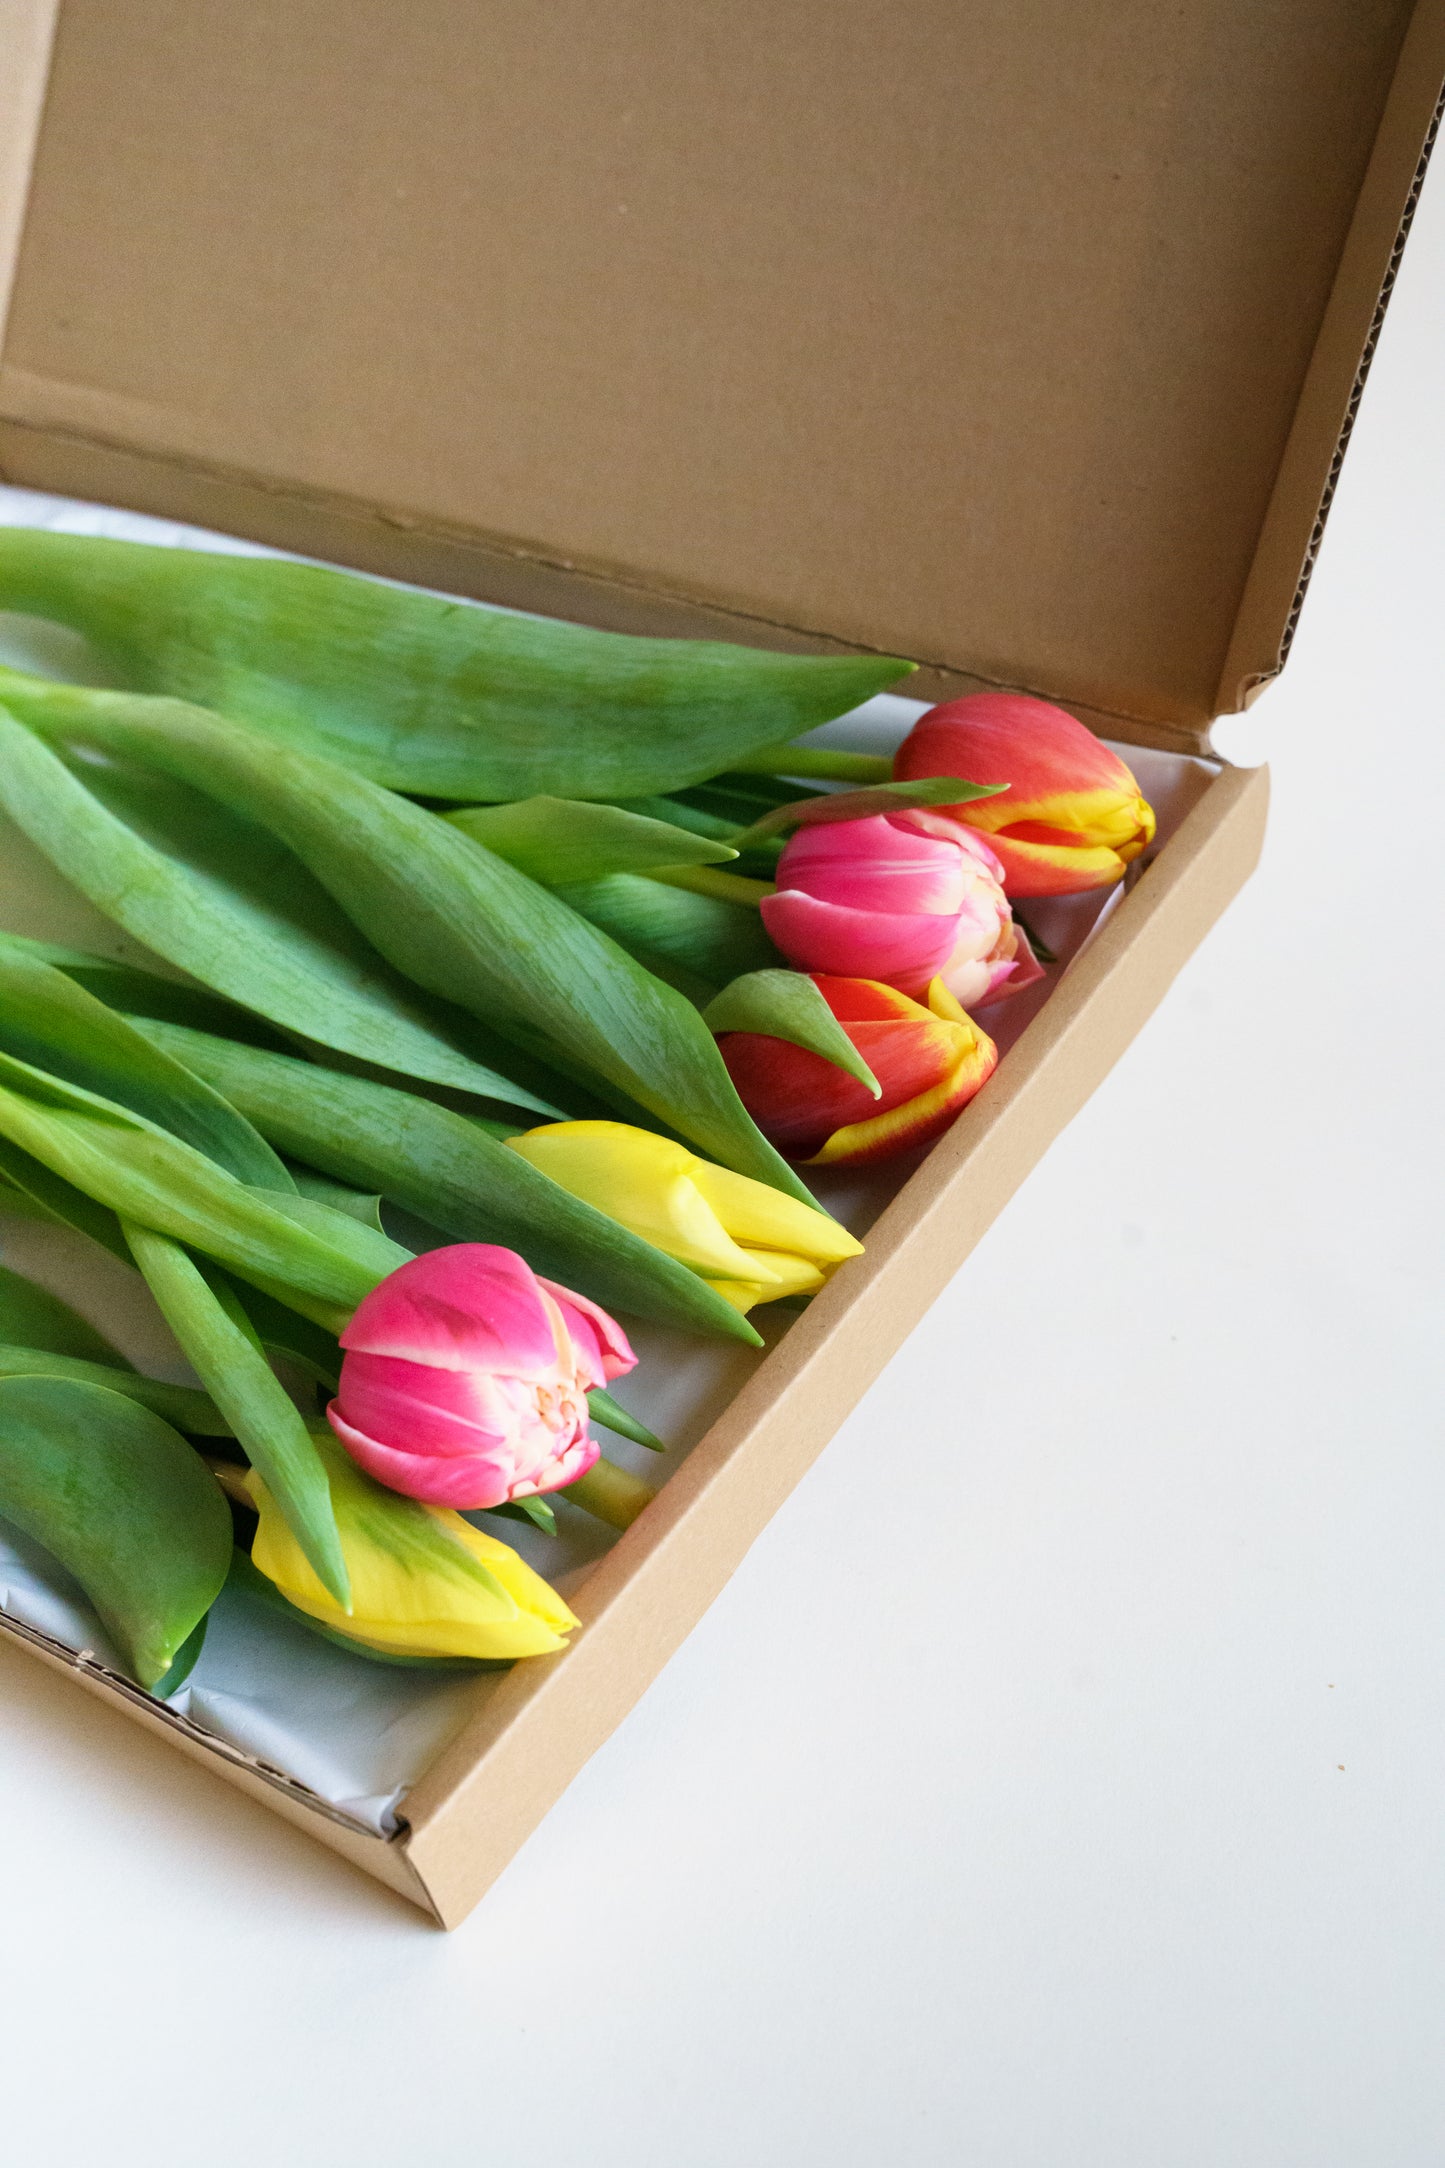 Brievenbus bloemen bestellen? Wij hebben heerlijke plukverse tulpen van de kweker!